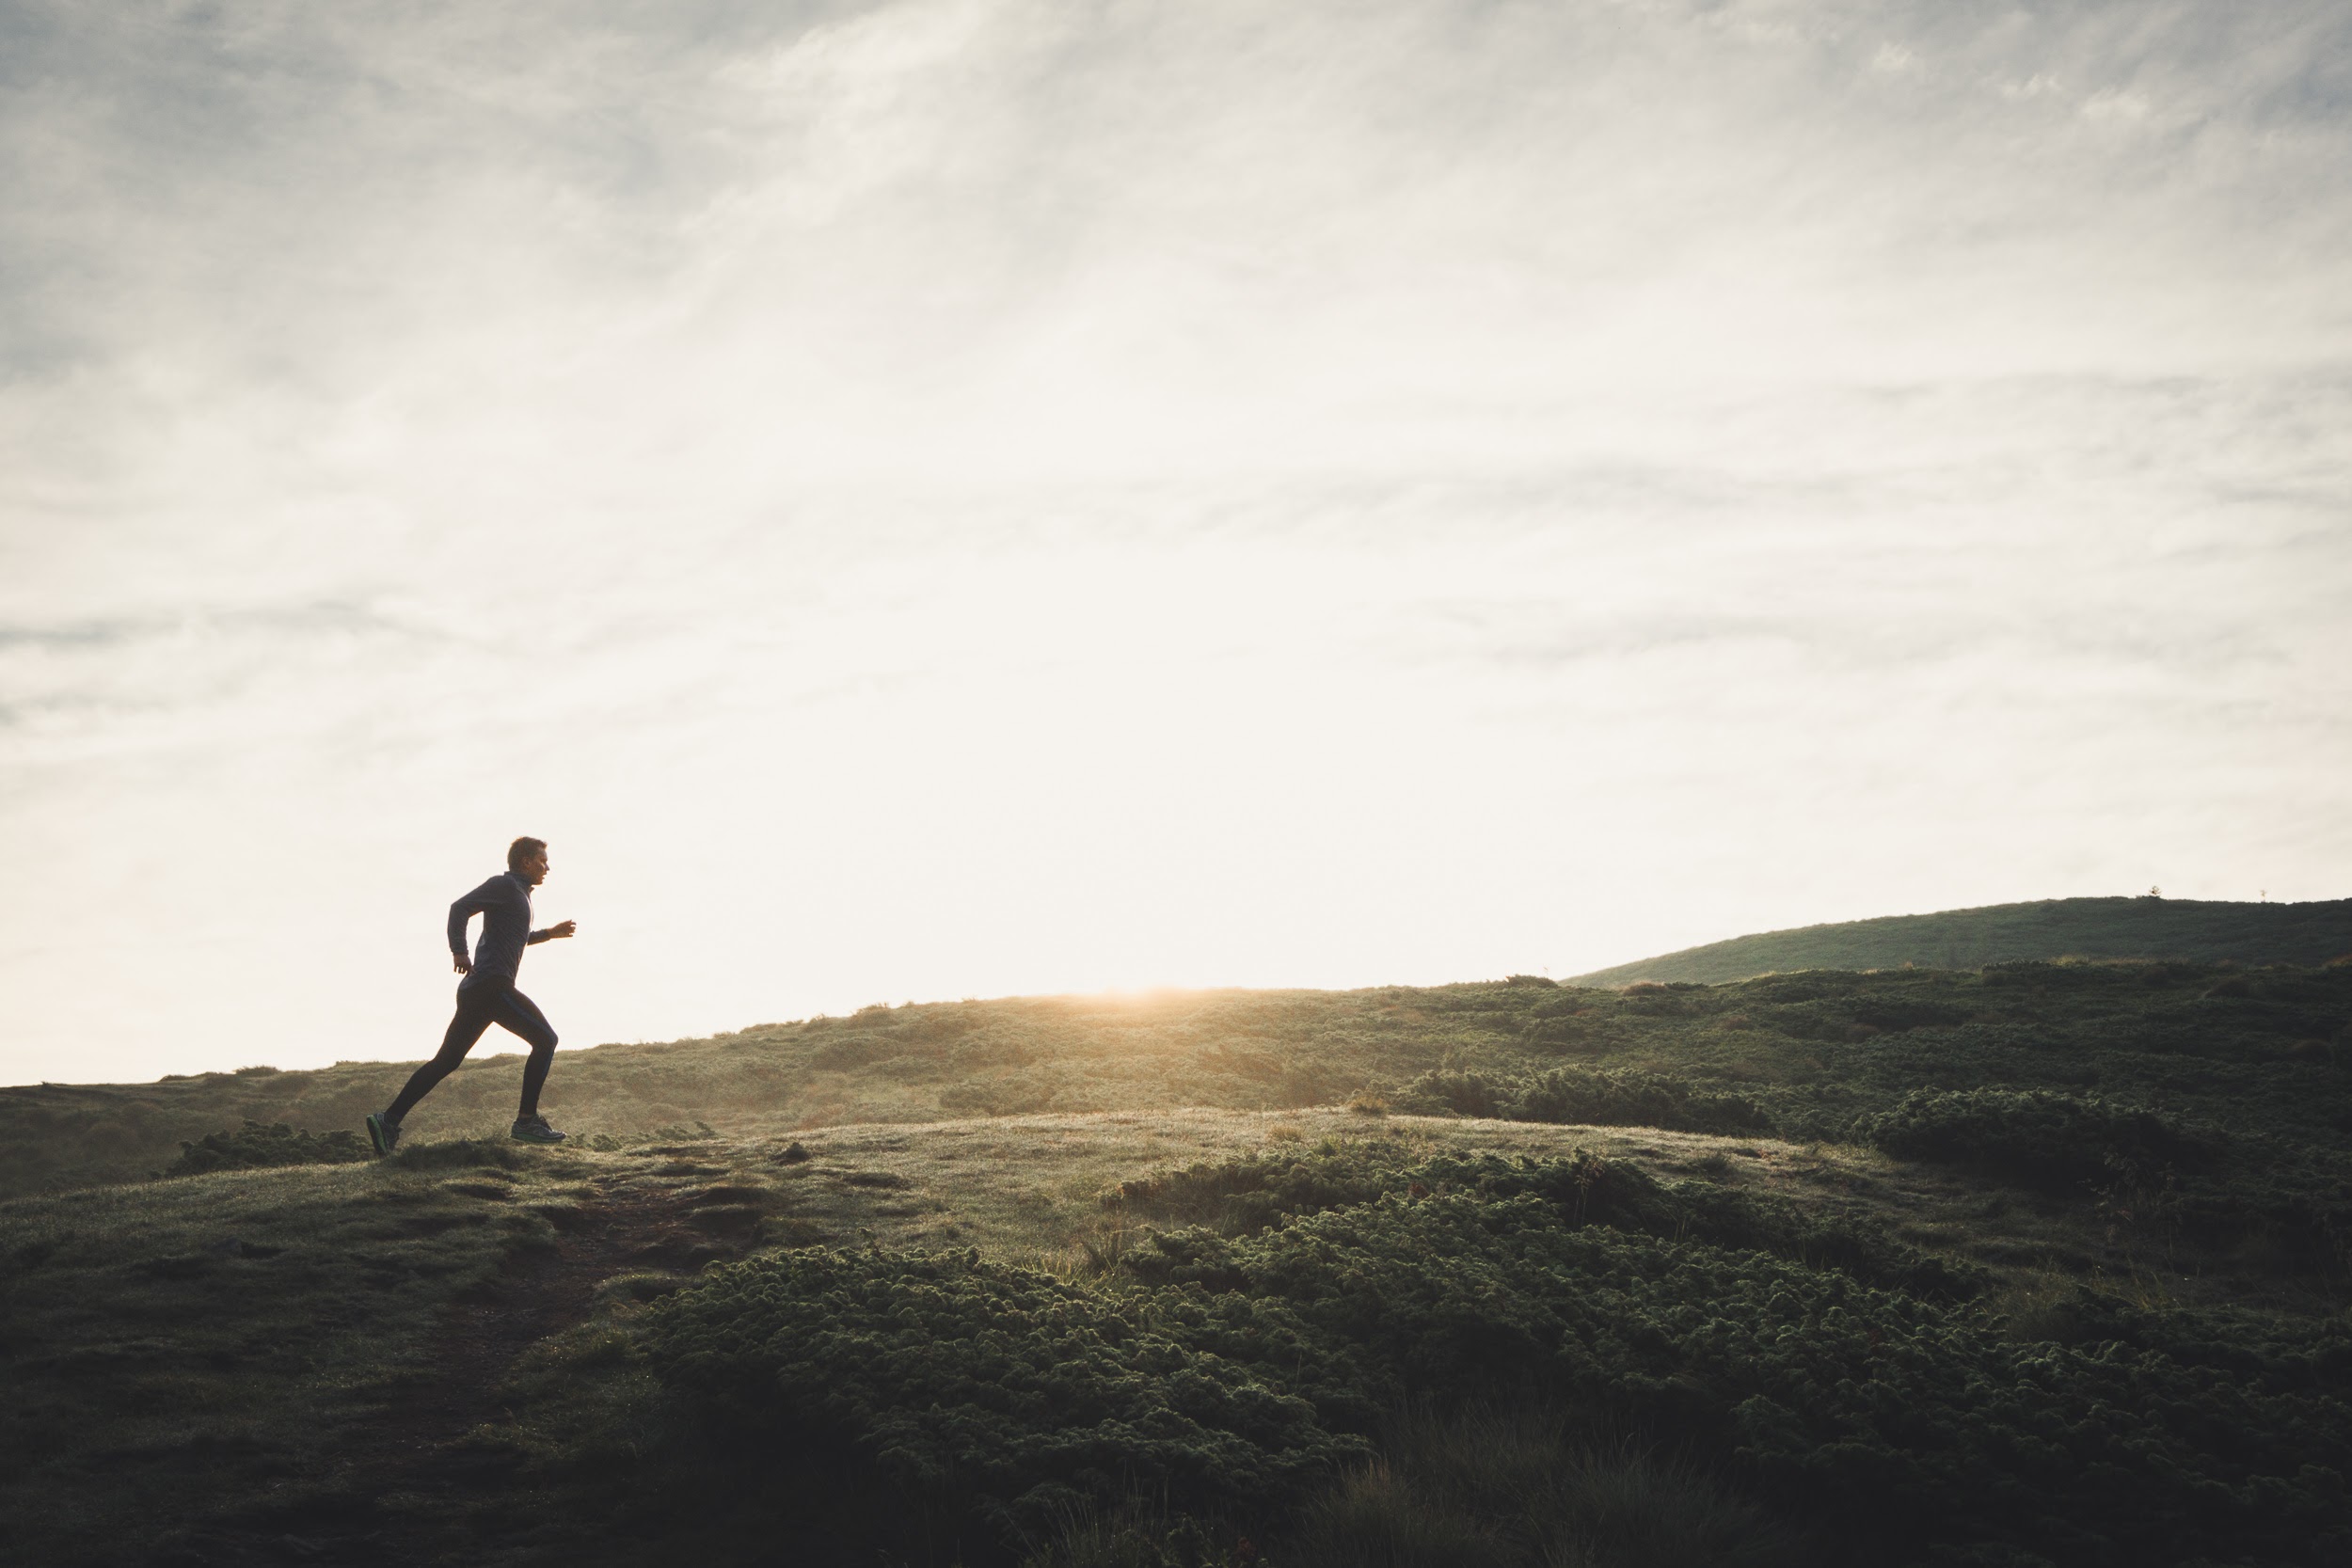 Чем полезен бег? Что говорит наука о пользе бега для здоровья